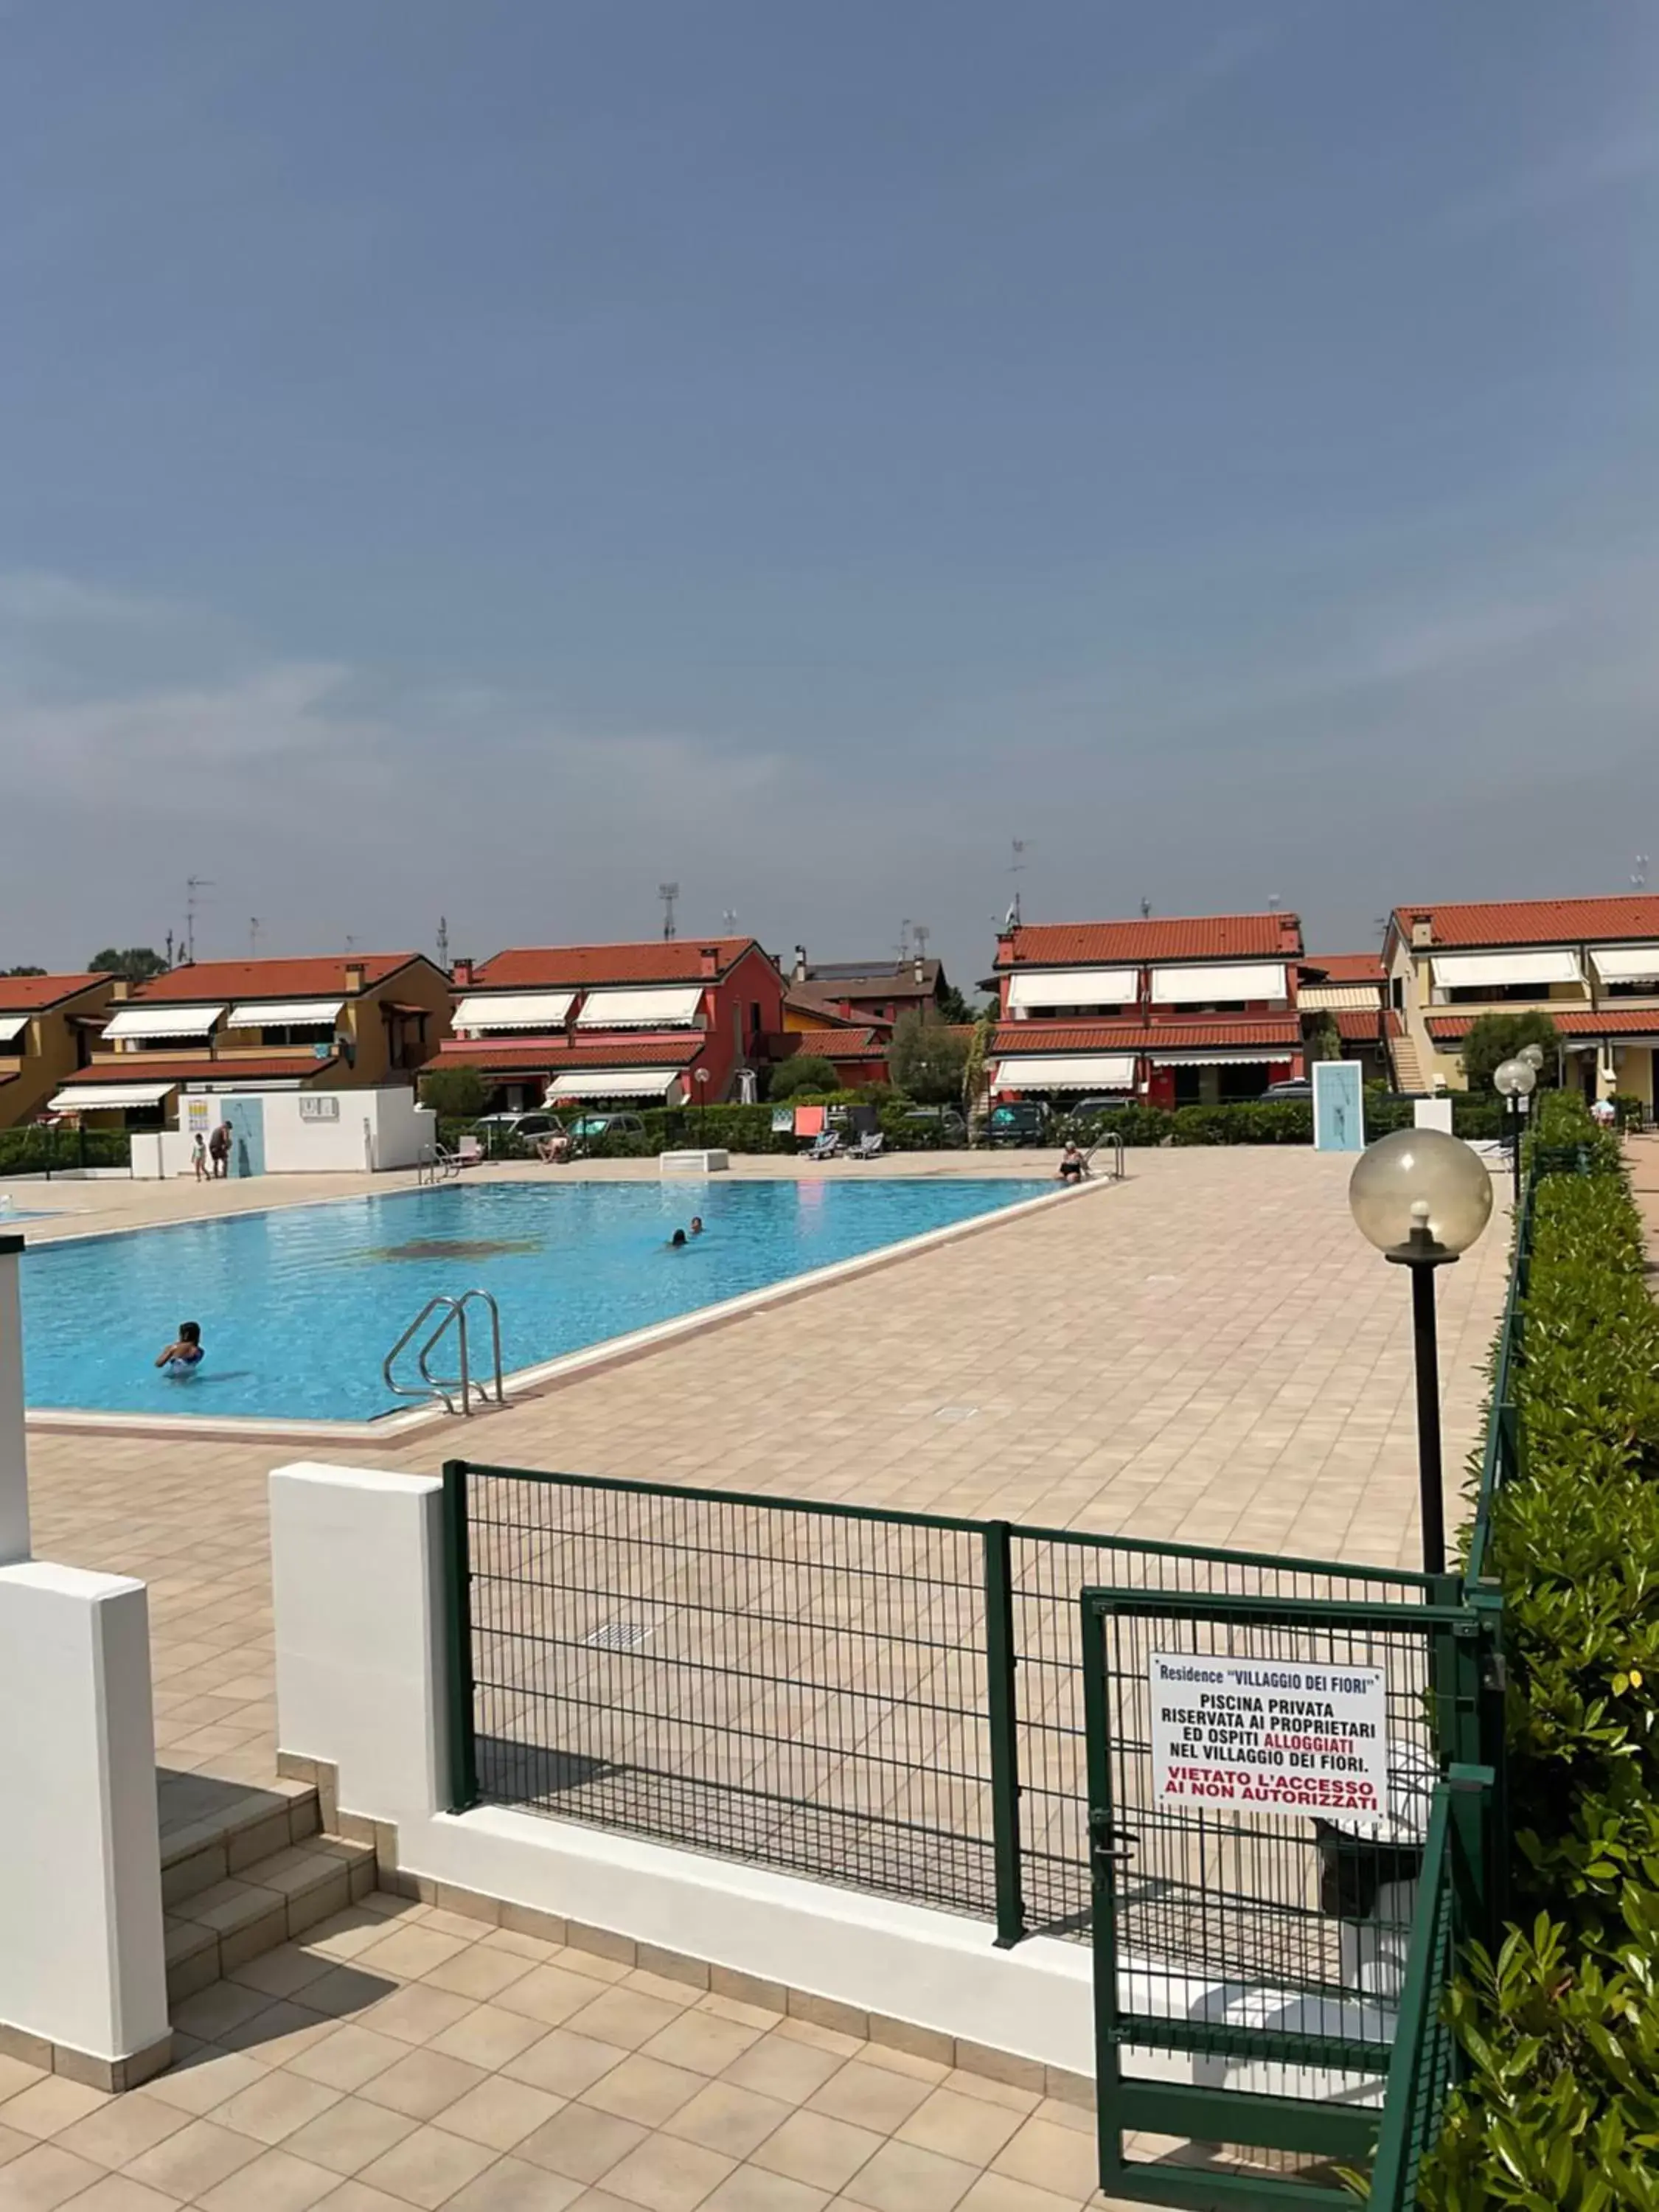 Swimming Pool in Villaggio dei Fiori Apart- Hotel 3 Stars - Family Resort